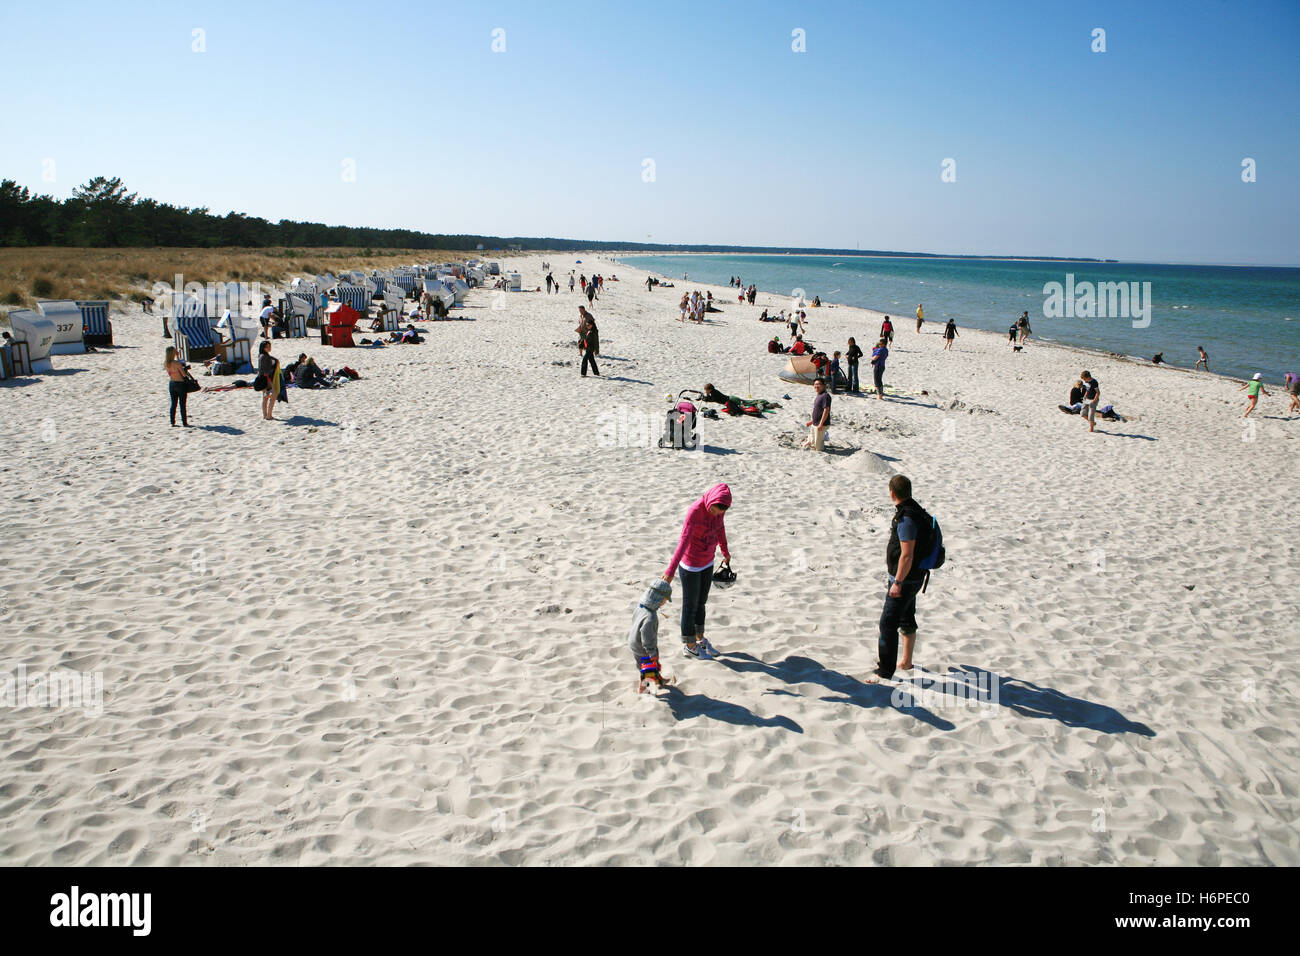 Playa de arena en darÃŸ-Zingst Foto de stock